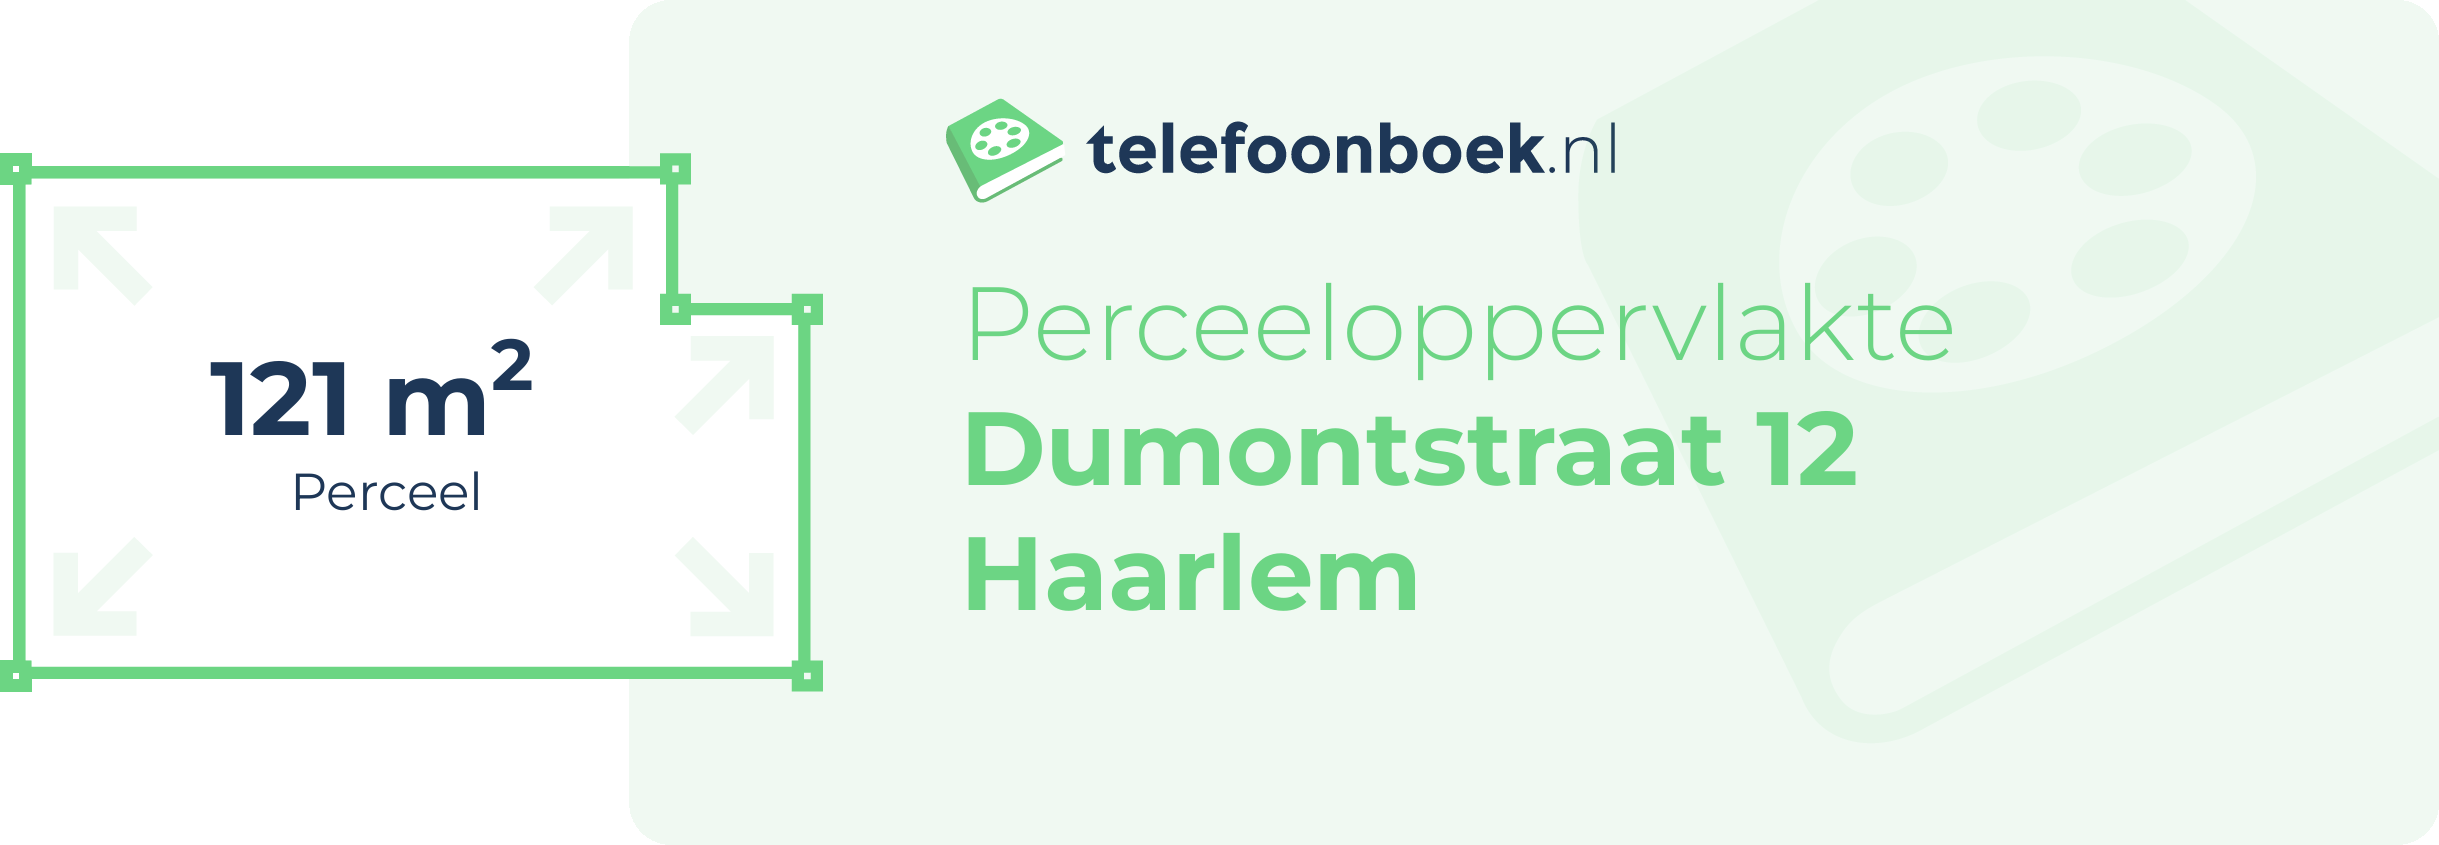 Perceeloppervlakte Dumontstraat 12 Haarlem